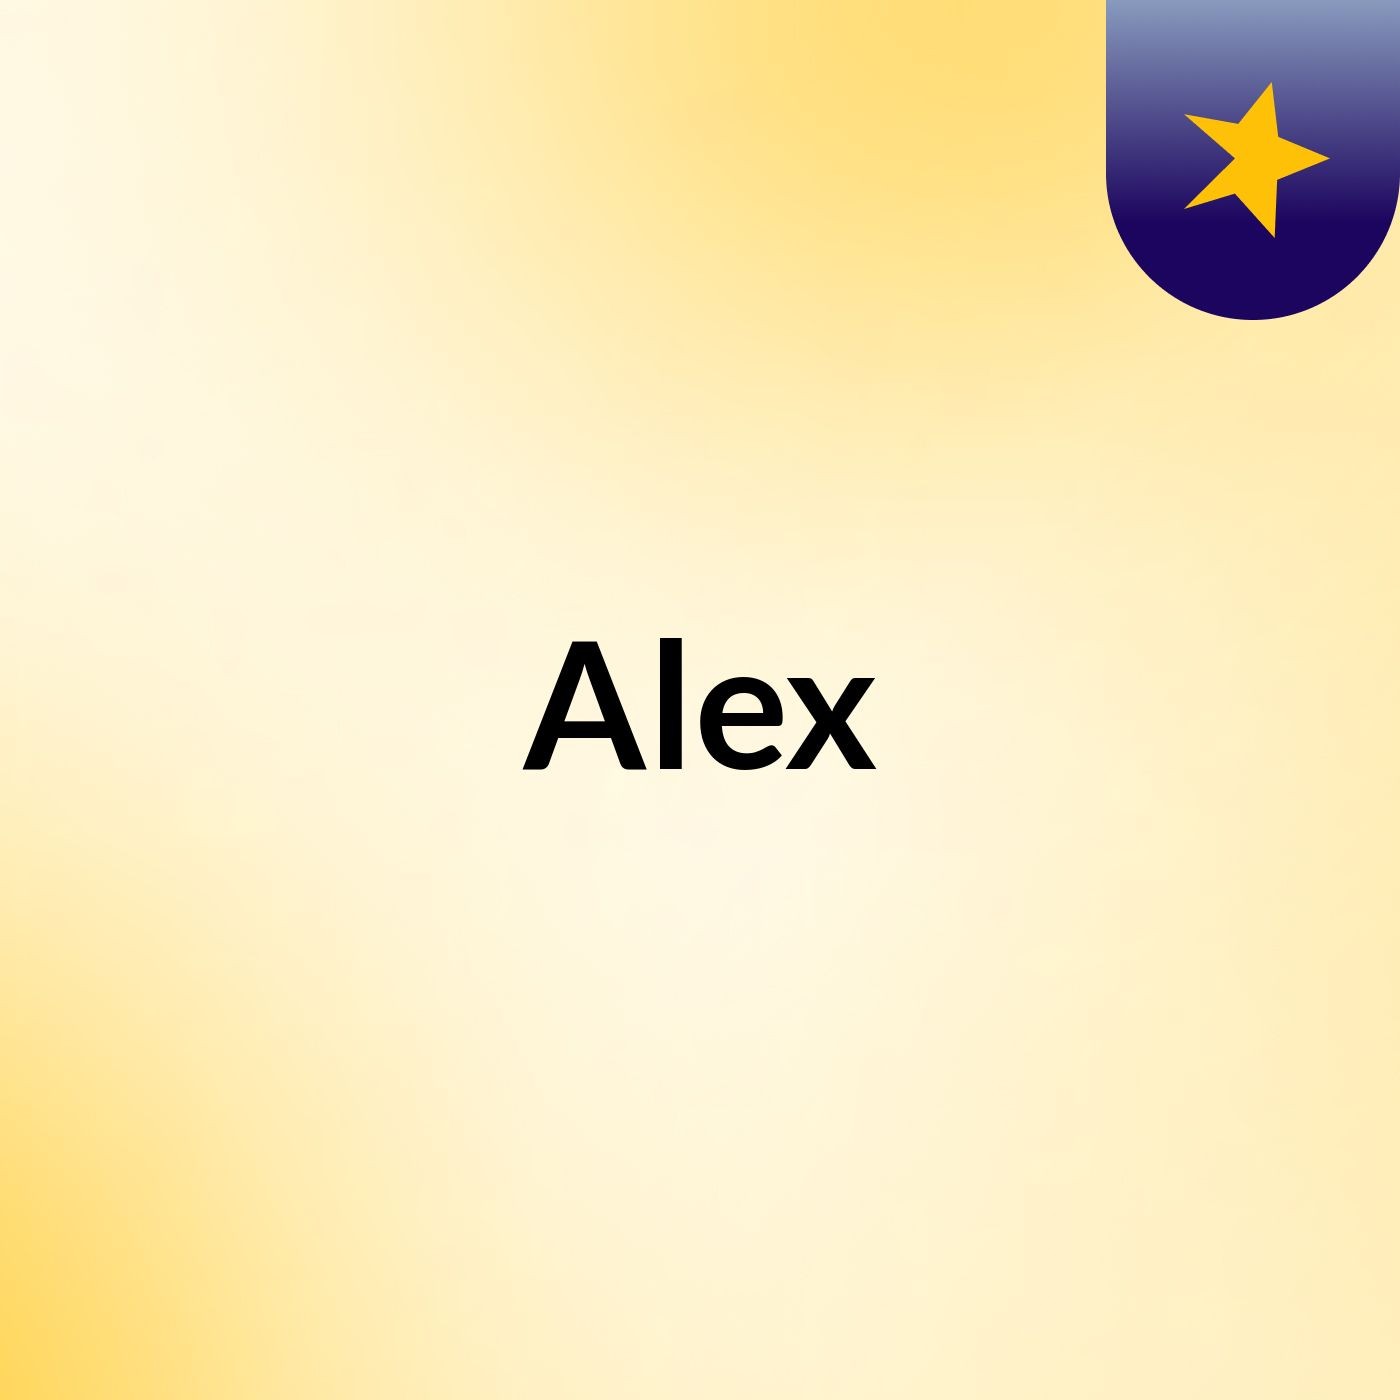 Episode 110 - Alex